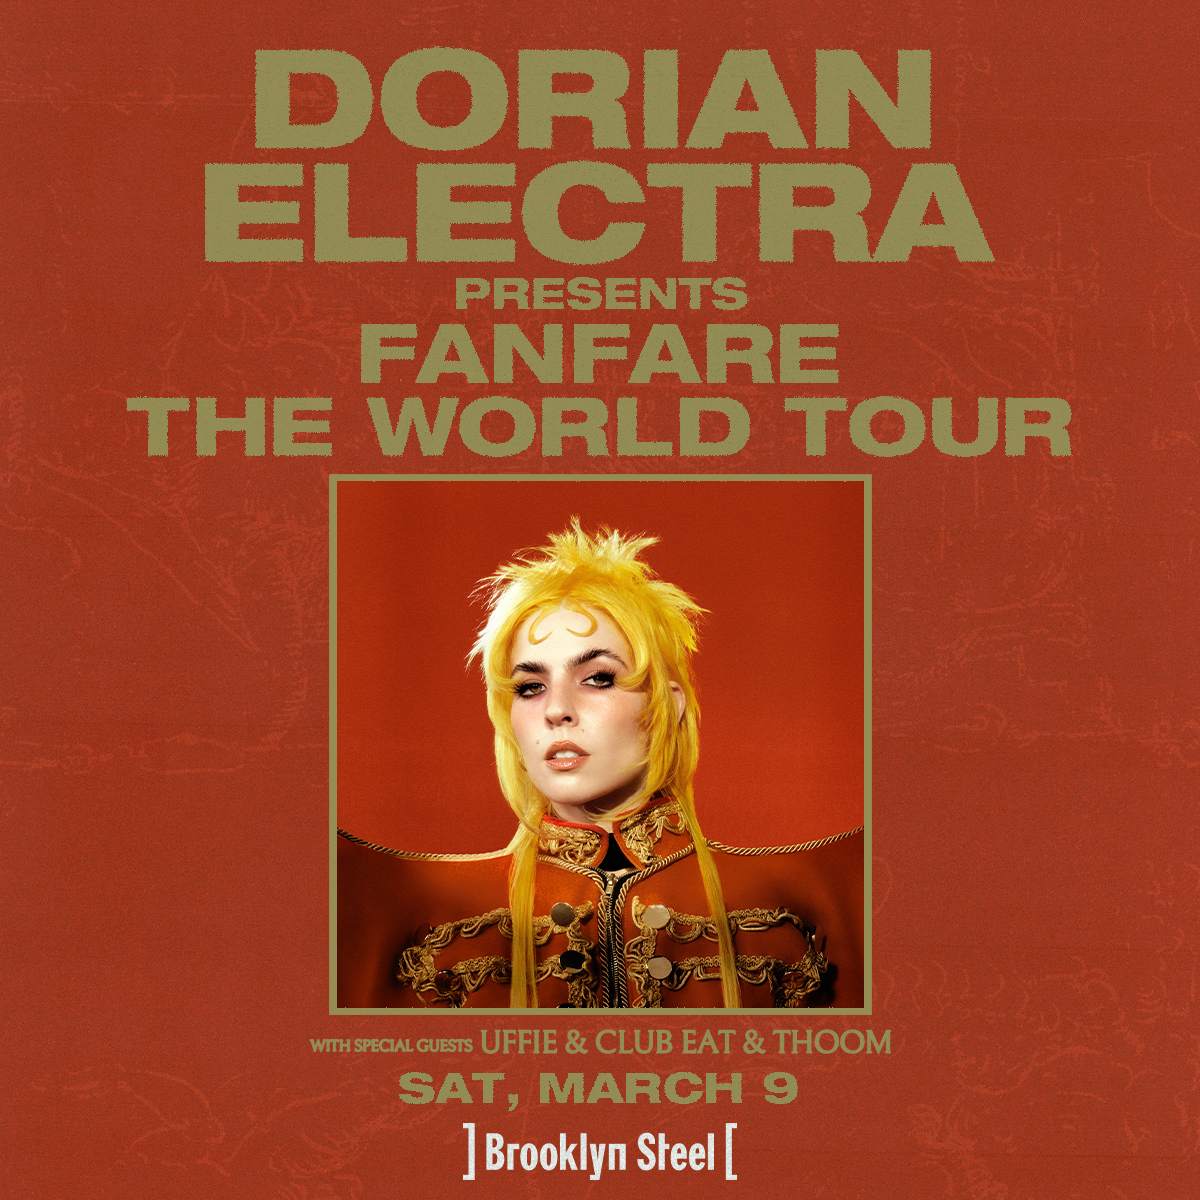 Dorian Electra - Página frontal